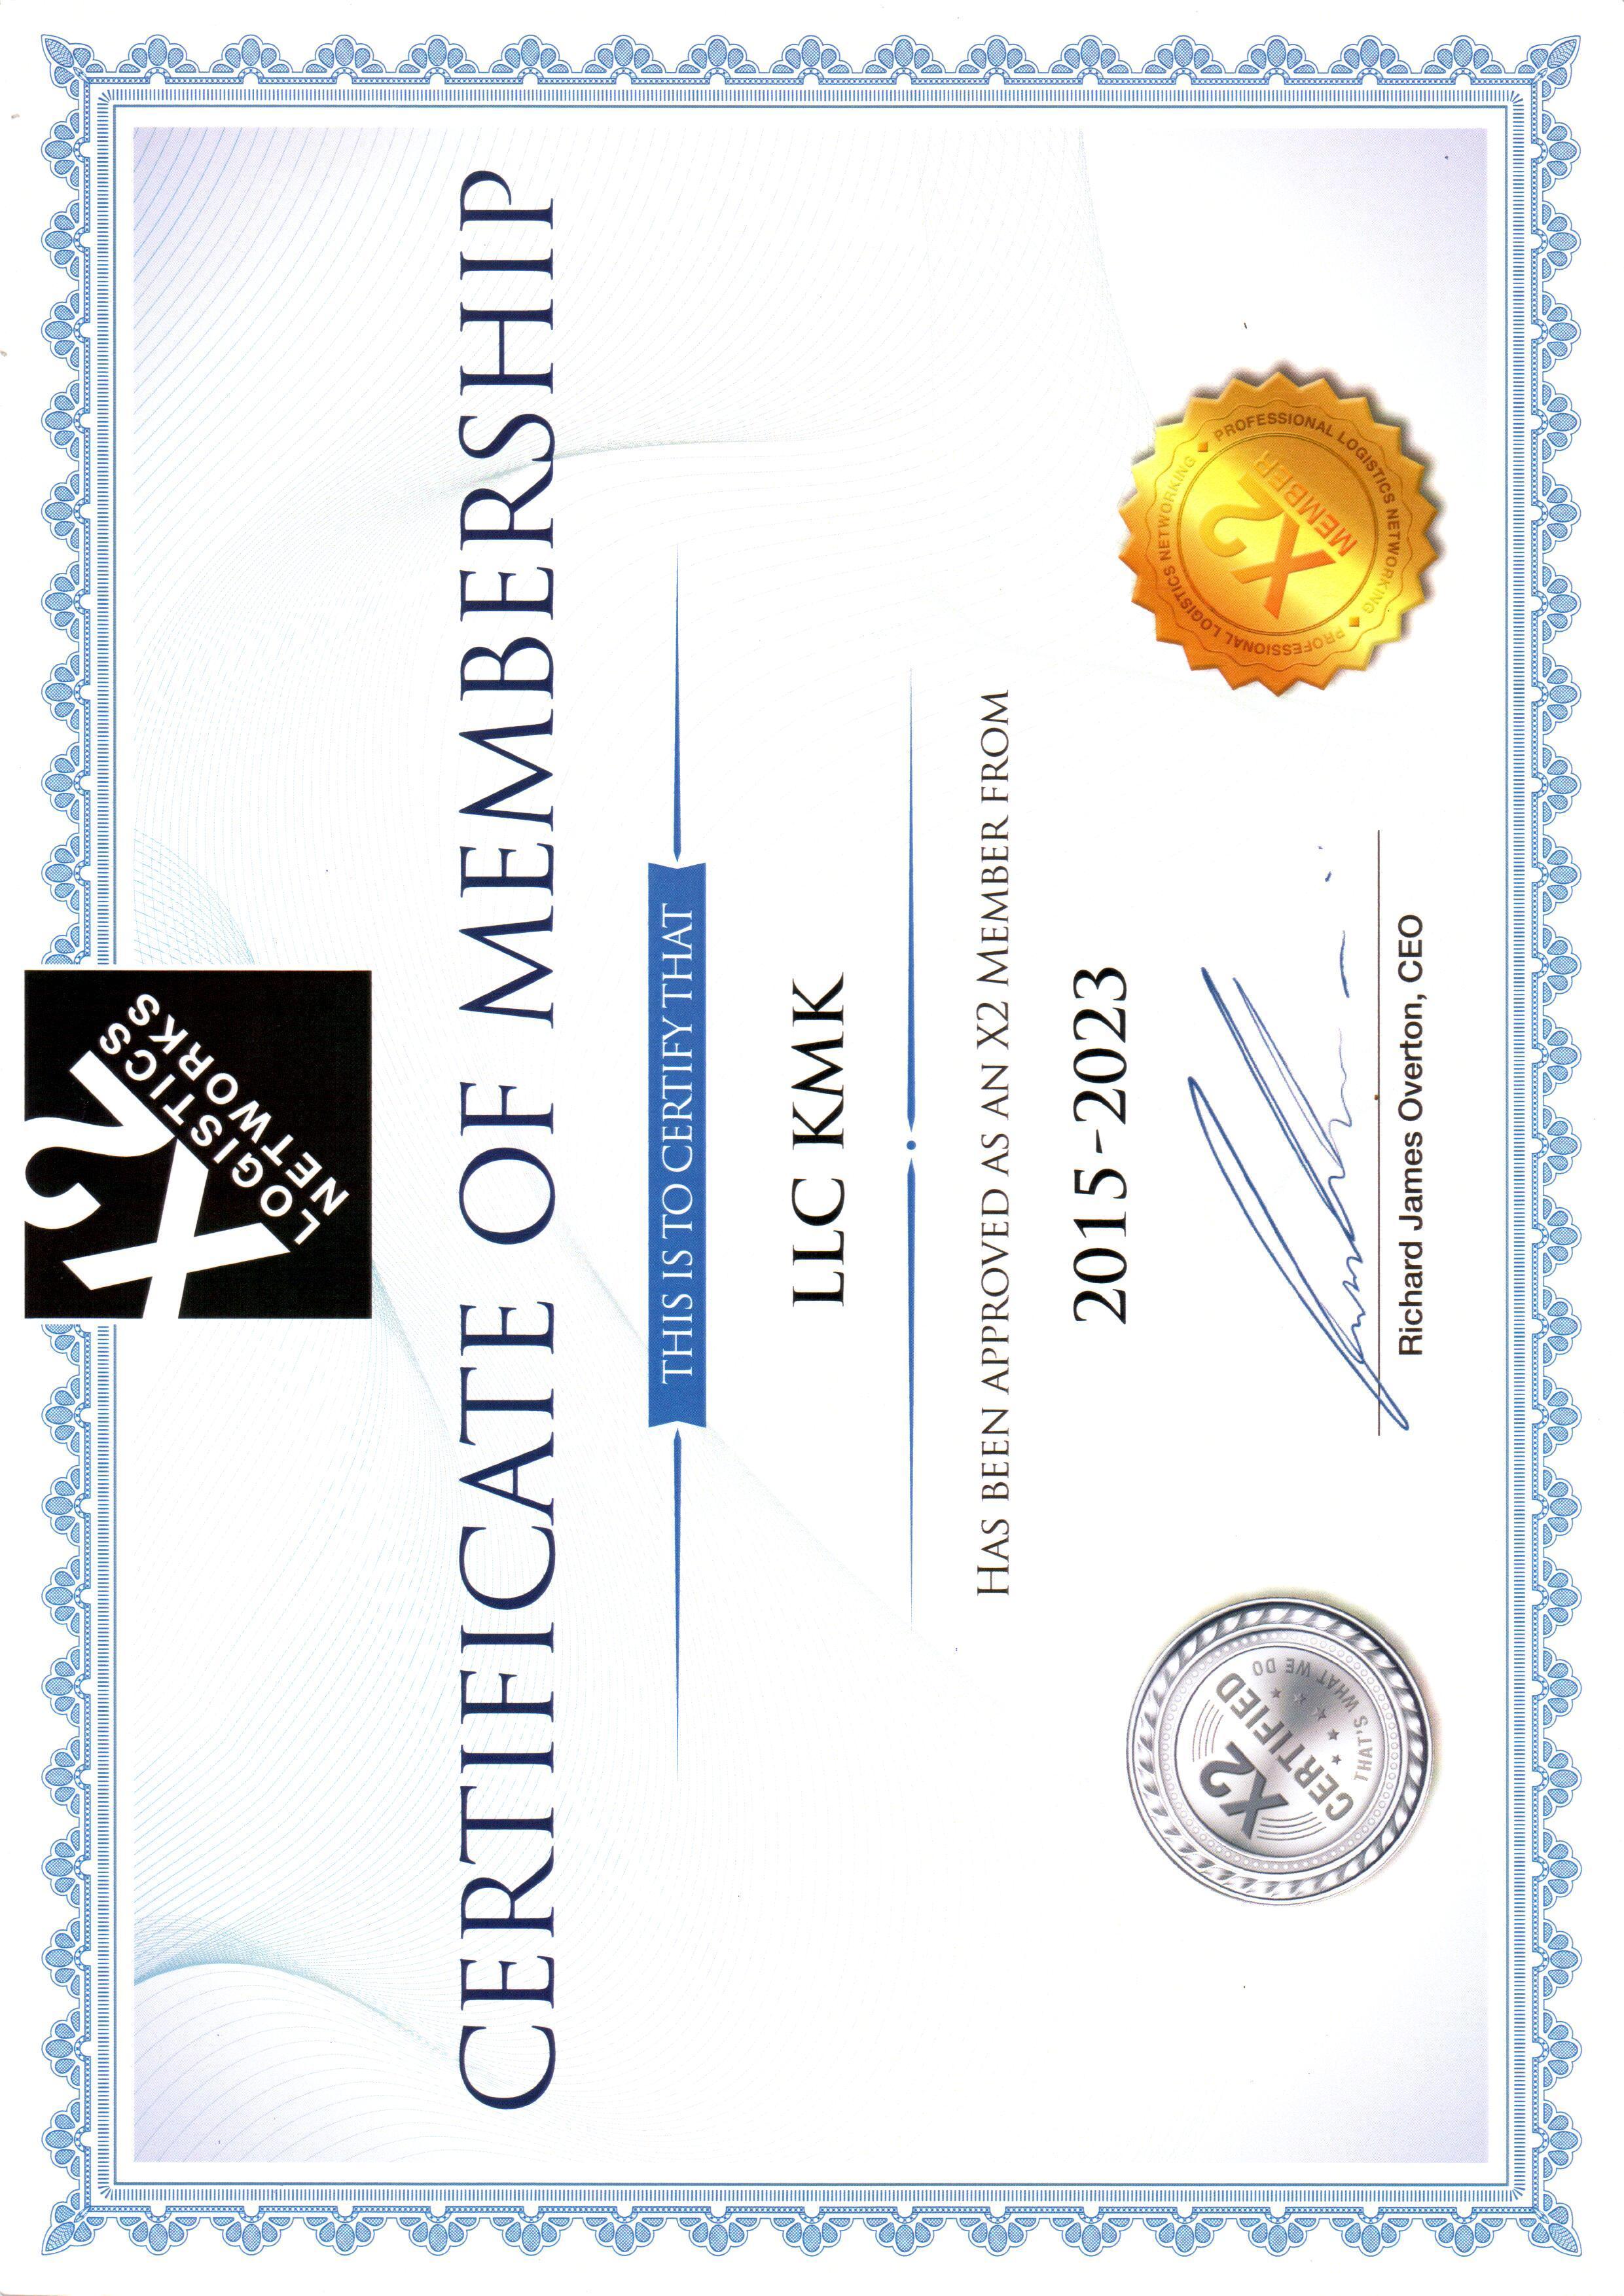 Certificate of Membership